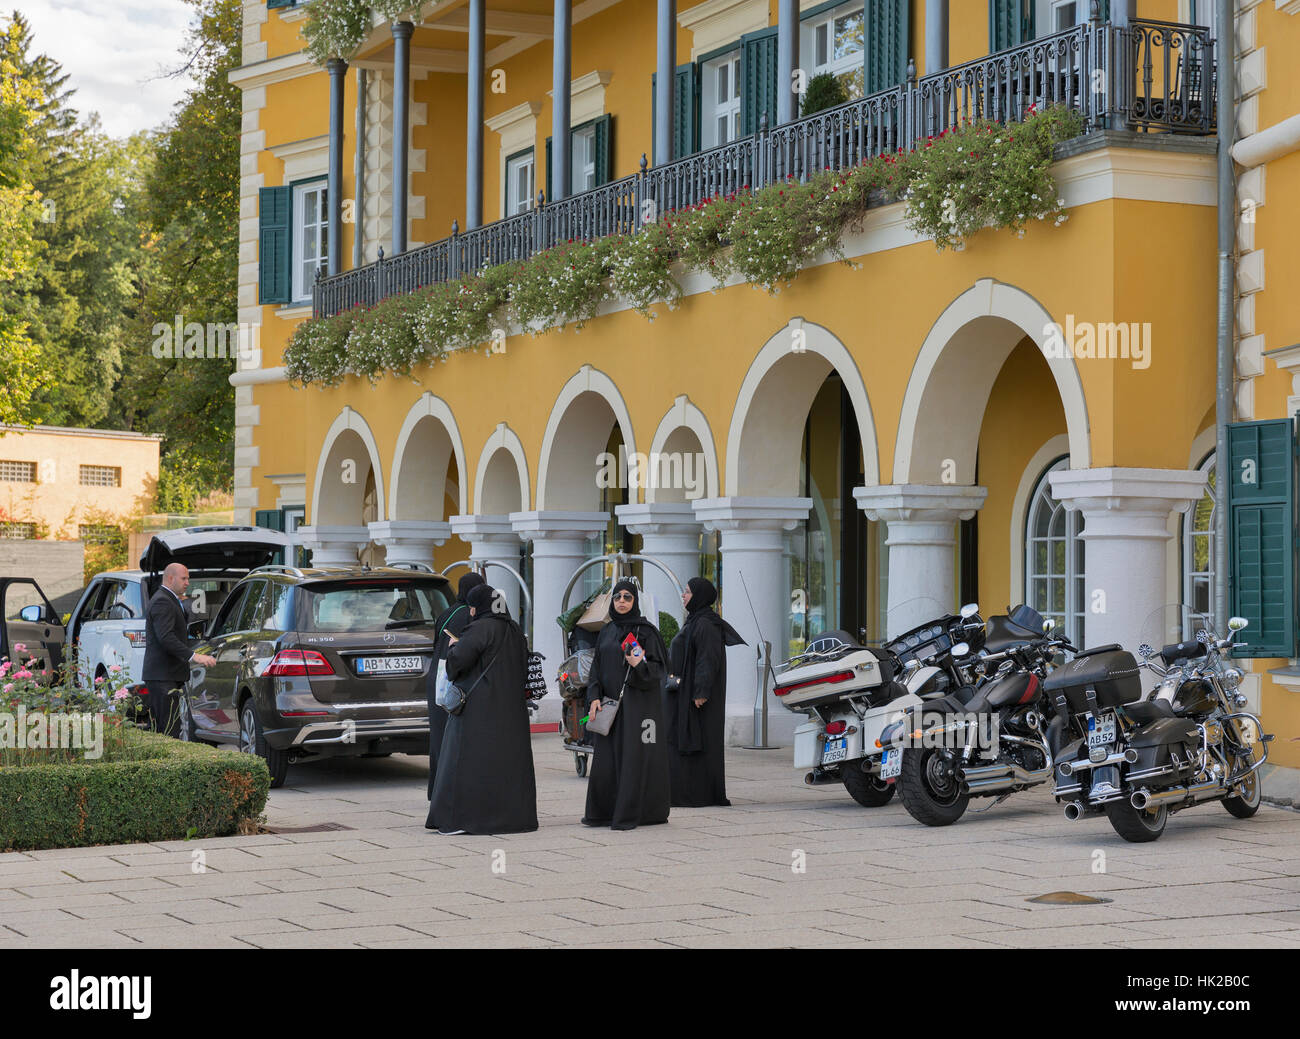 Les femmes en hijab en face de l'hôtel Carinthia Velden durant la Semaine européenne annuelle Bike Festival. Banque D'Images